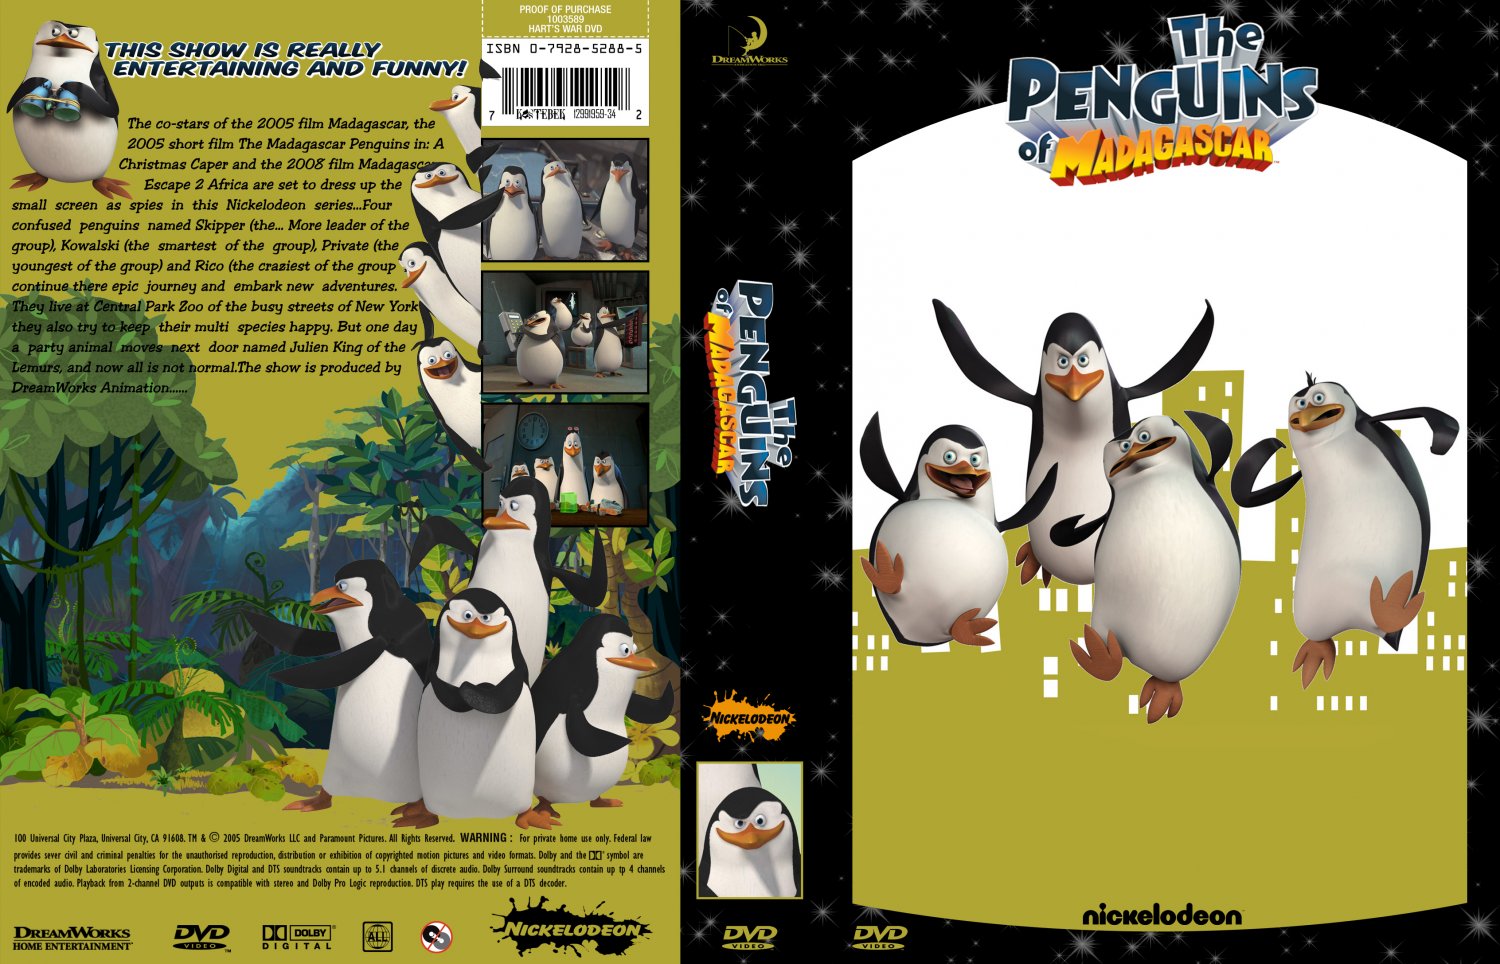 The Penguins of Madagascar season 3 - Wikipedia